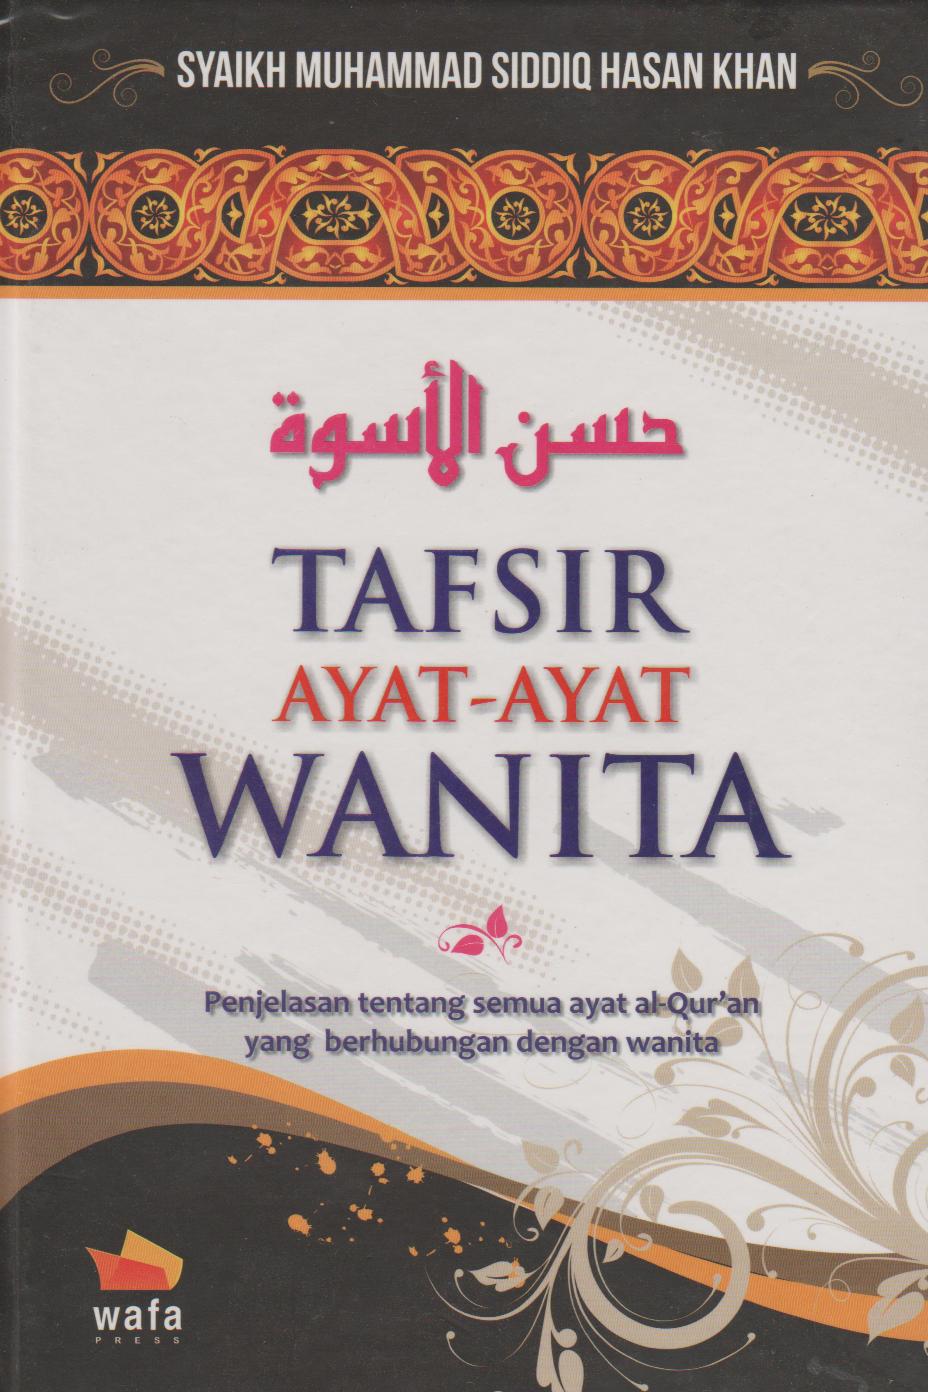 Download Terjemah Kitab Tanqihul Qoul Pdfl